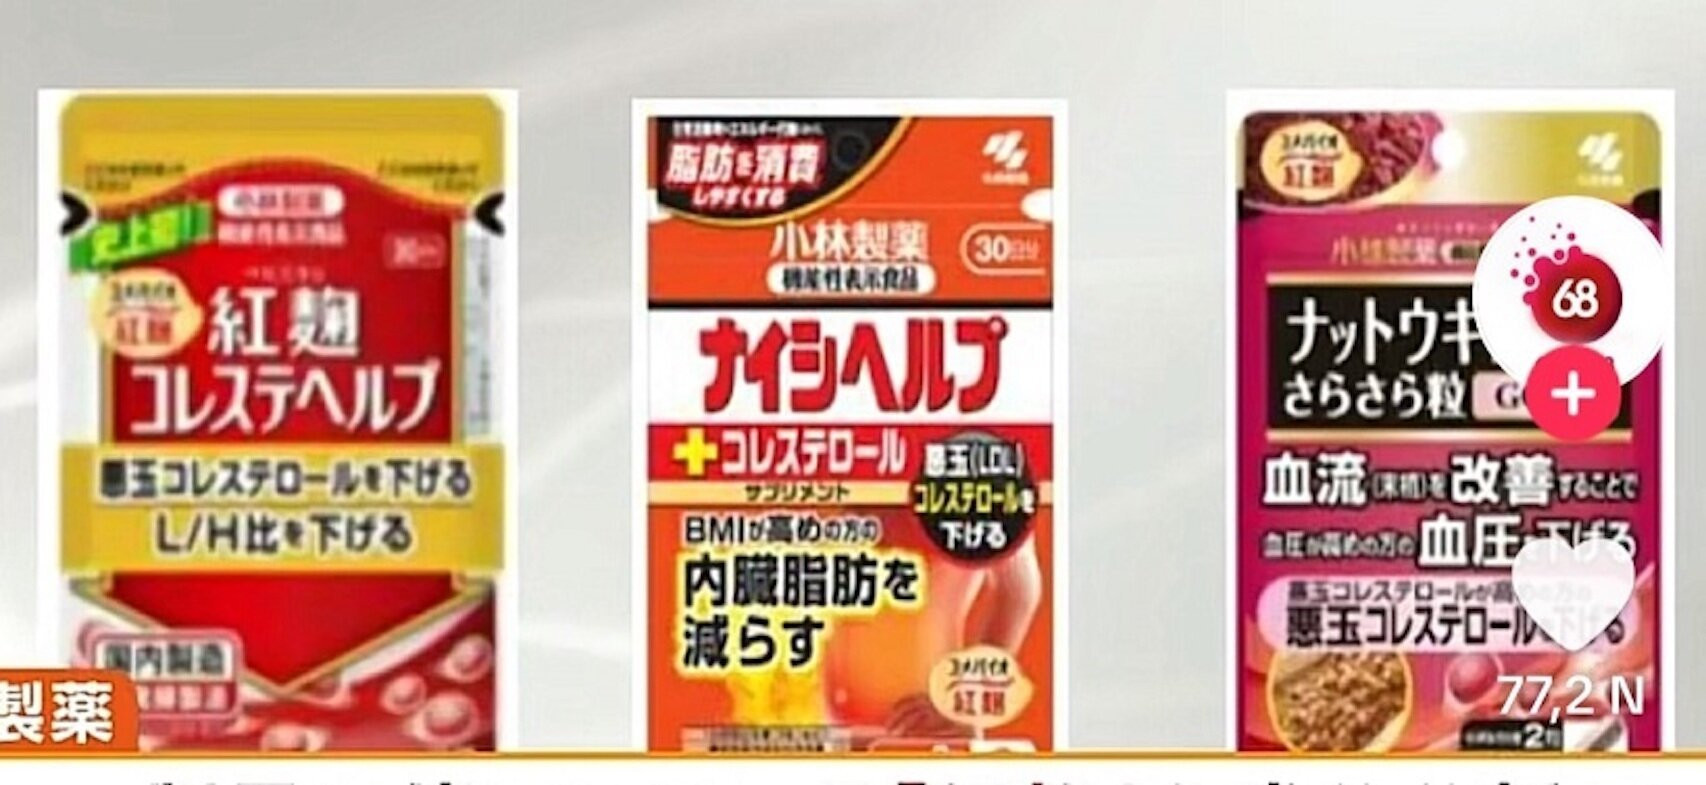 Công ty Dược phẩm Kobayashi thu hồi sản phẩm thực phẩm bảo vệ sức khoẻ có nguy cơ làm tổn thương thận. (Ảnh tư liệu: vfa.gov.vn)